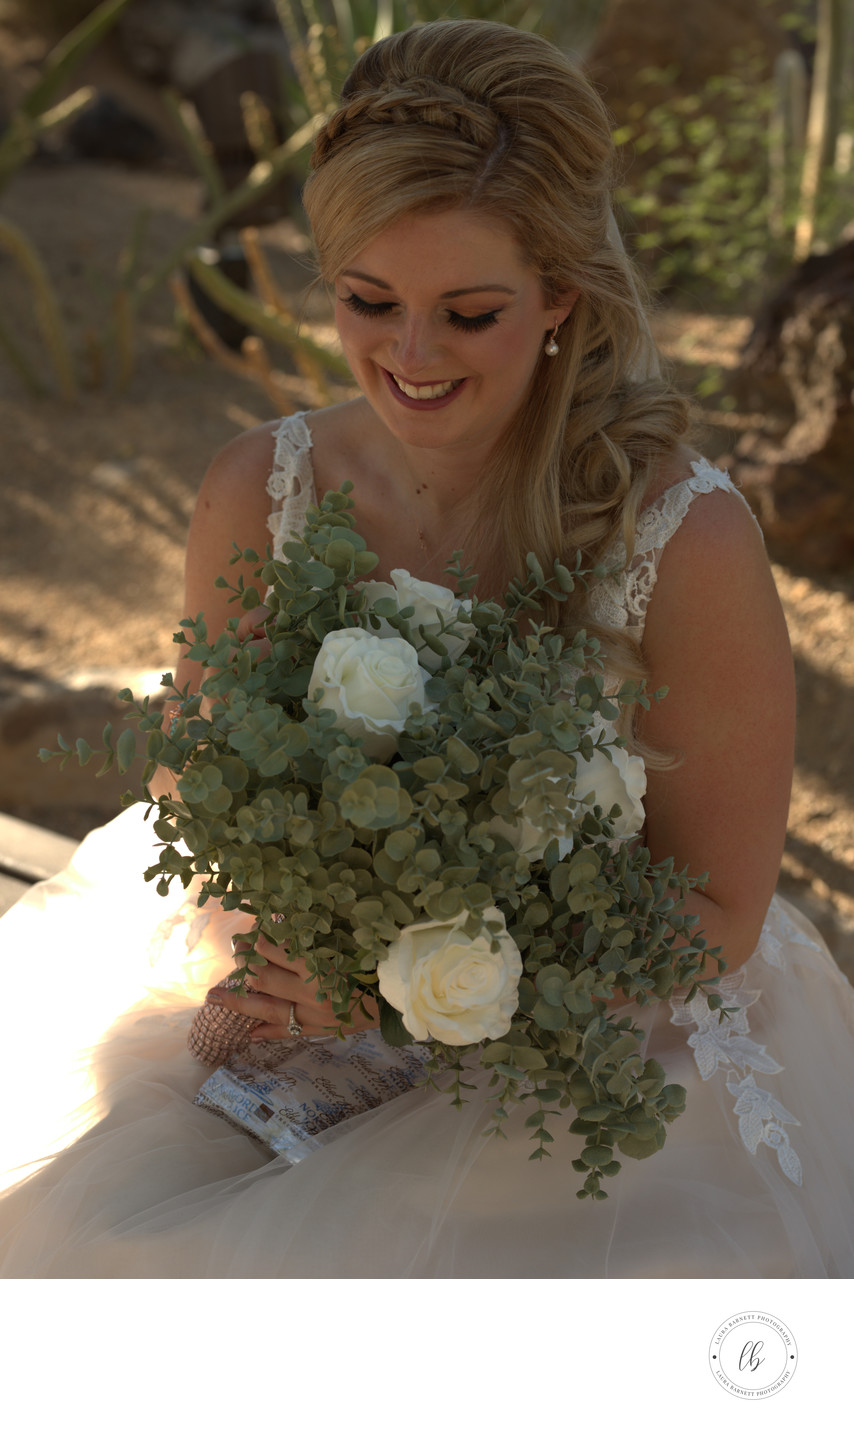 Las Vegas Wedding - Bride with bouquet 